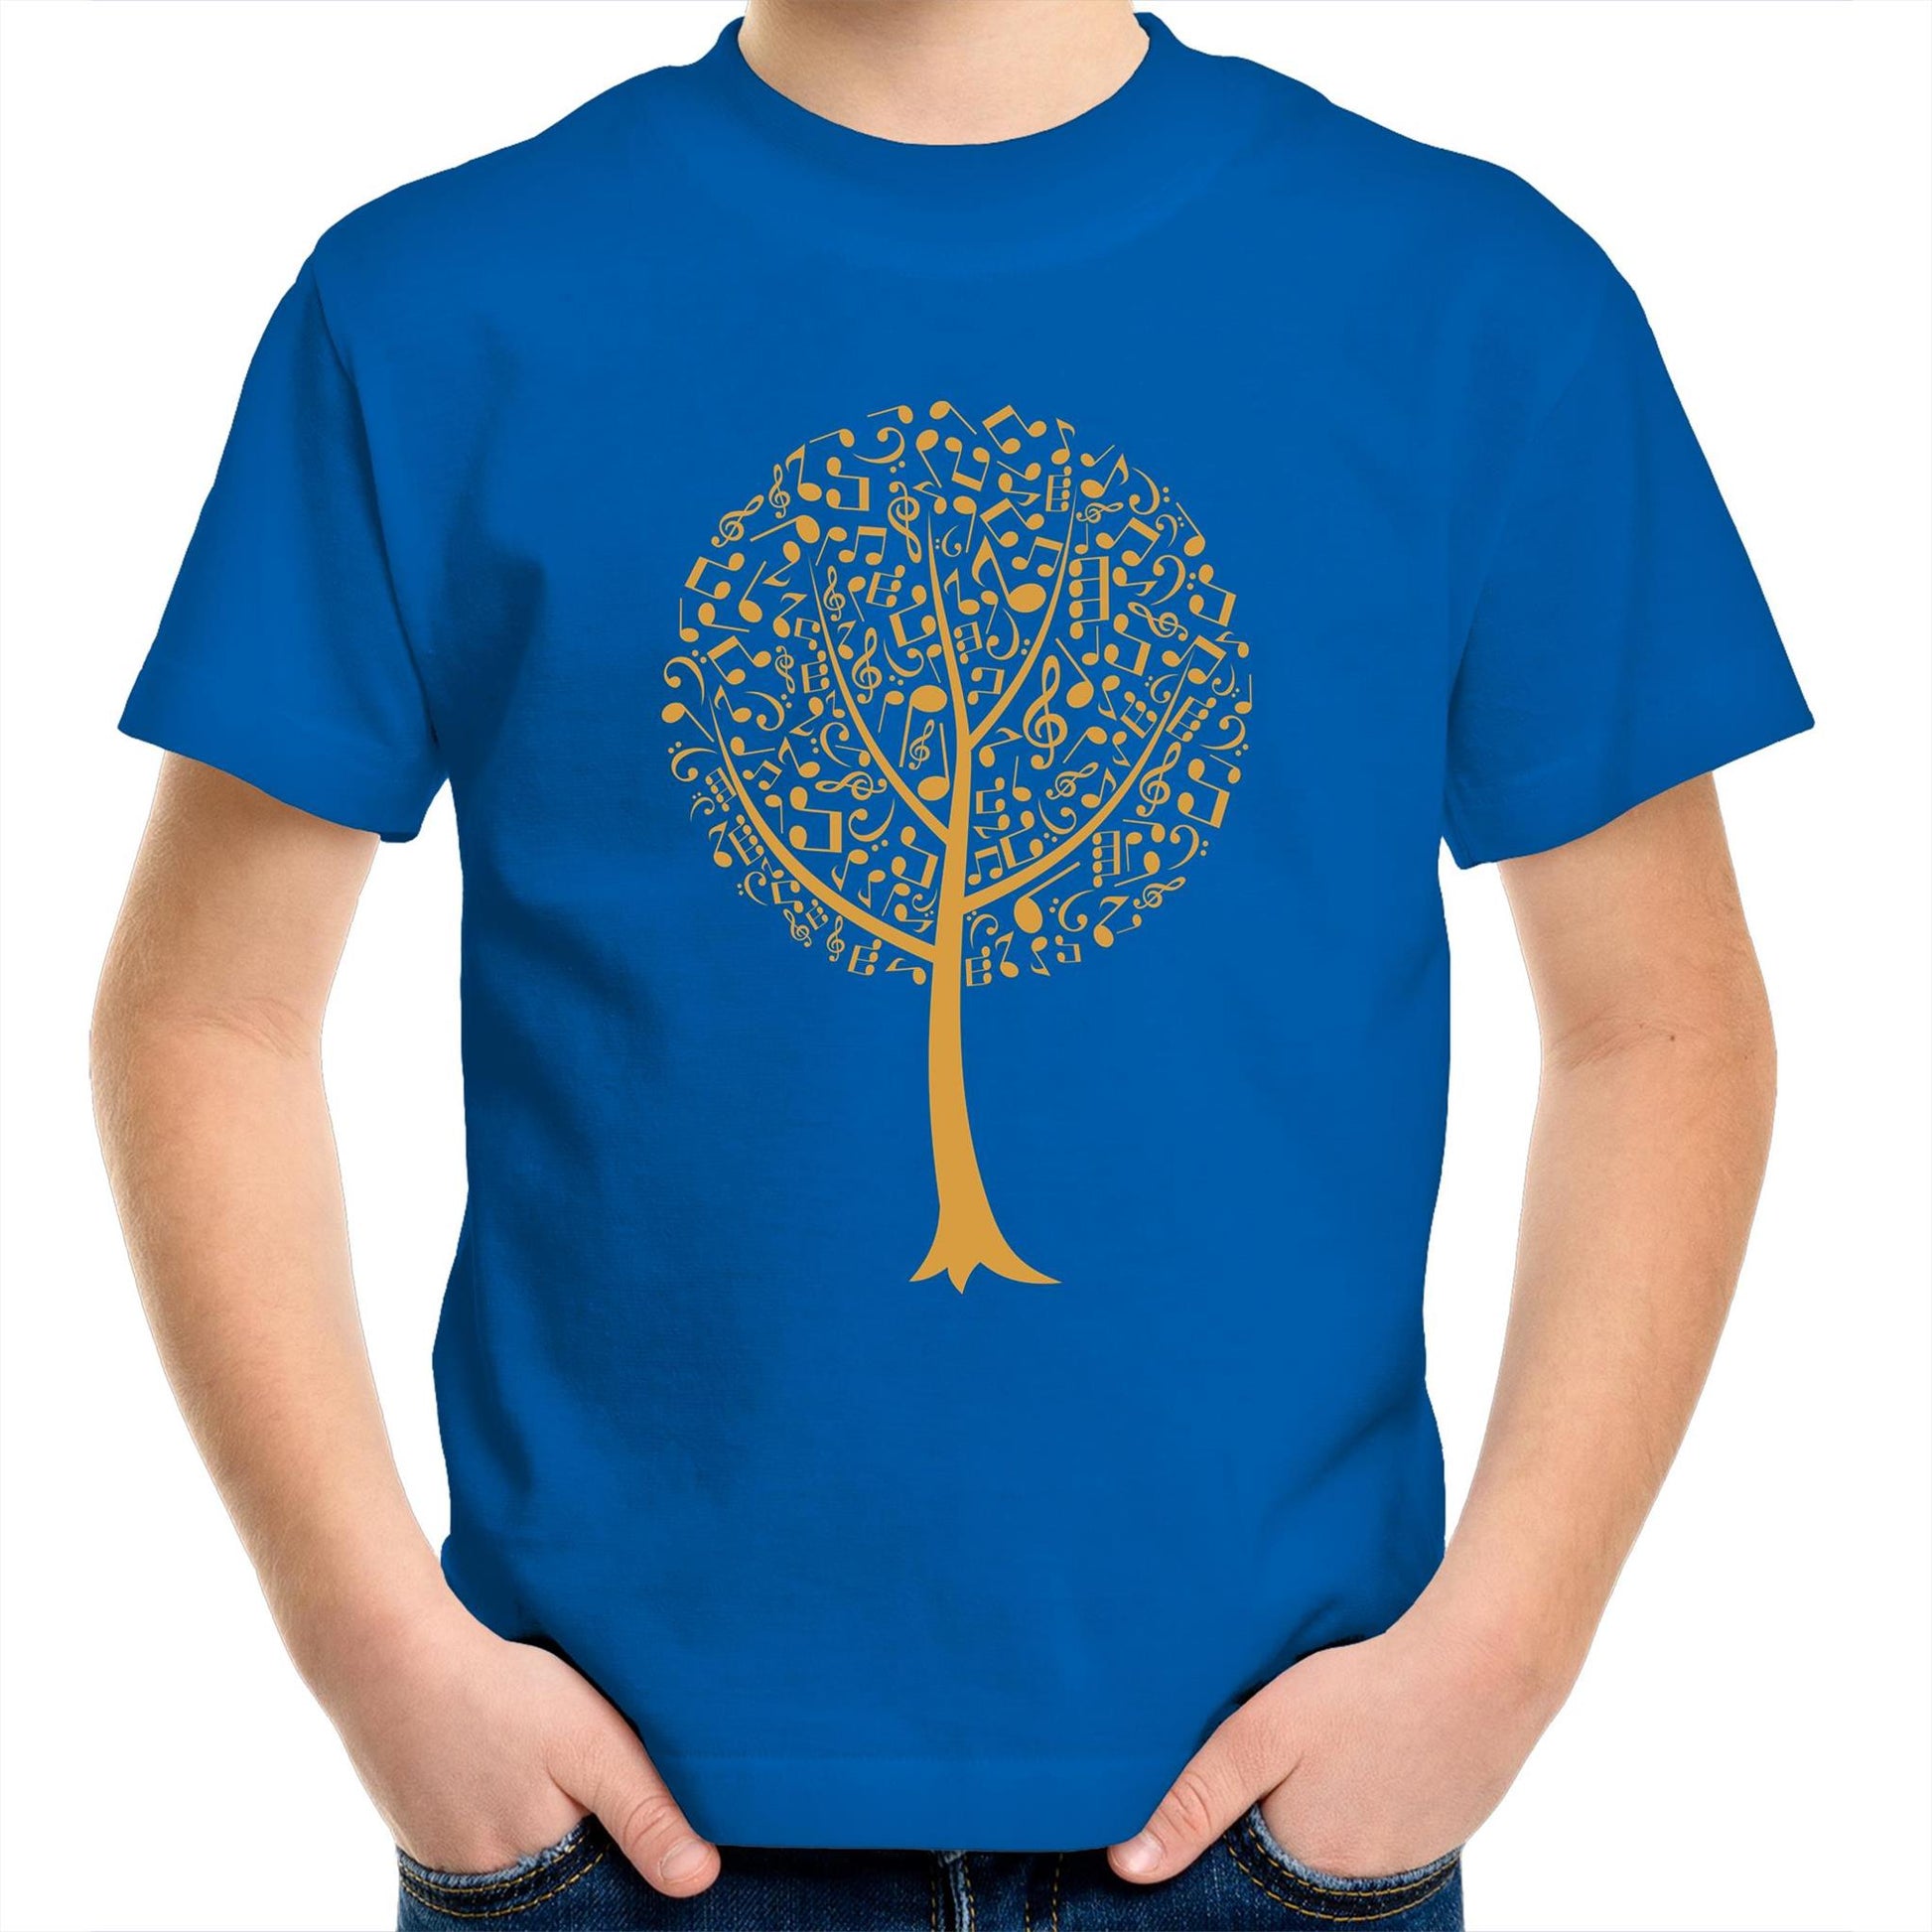 Music Tree - Kids Youth Crew T-Shirt Bright Royal Kids Youth T-shirt Music Plants